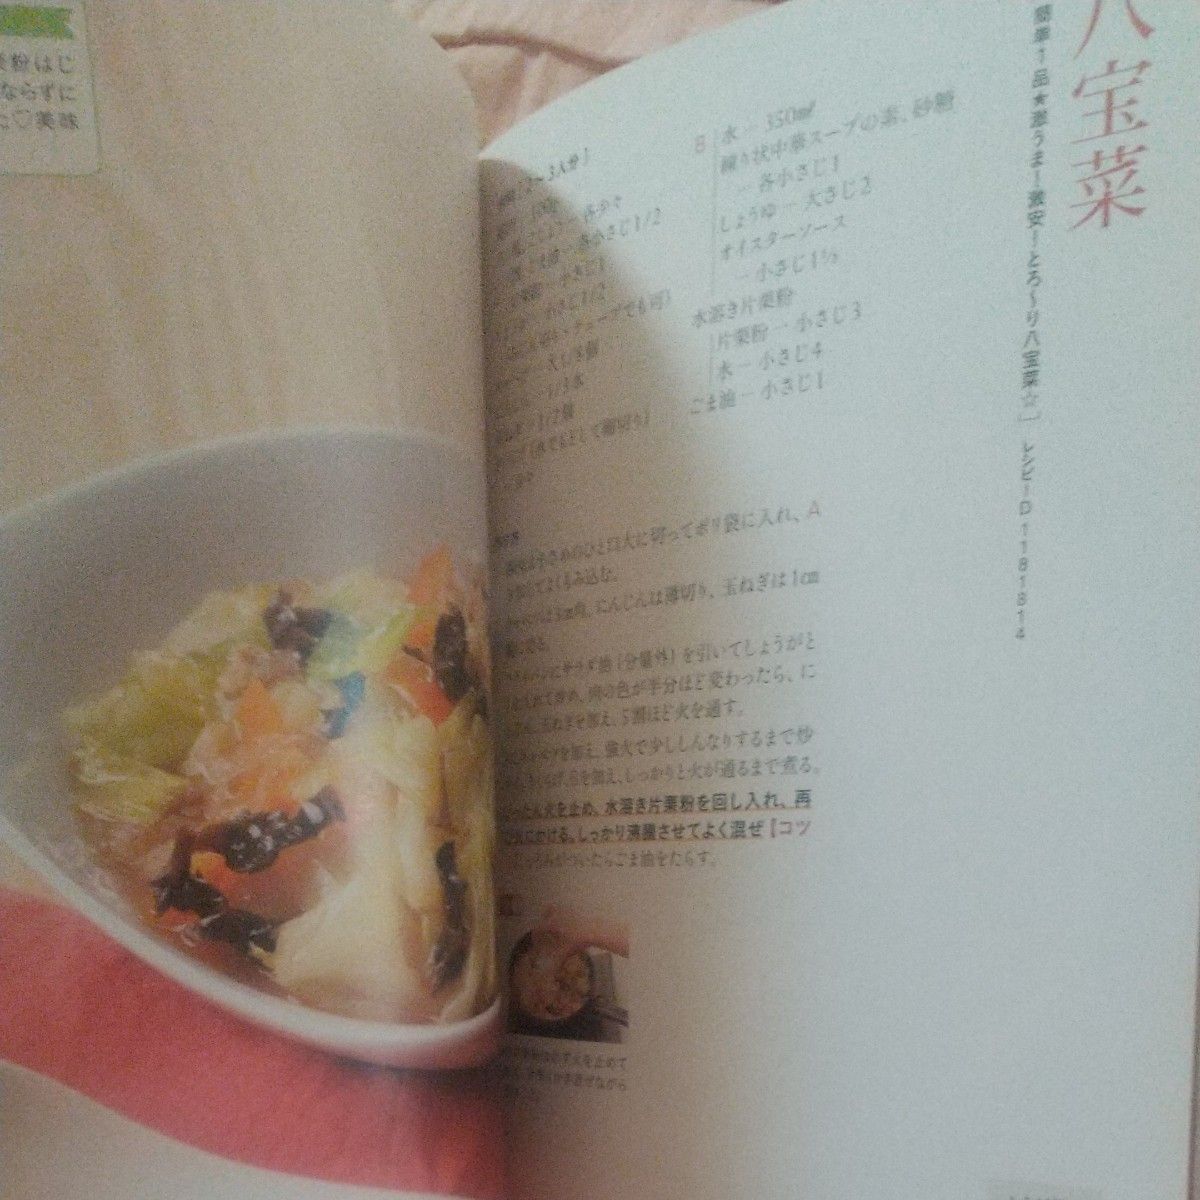 【美品】クックパッド おいしい厳選！野菜レシピ